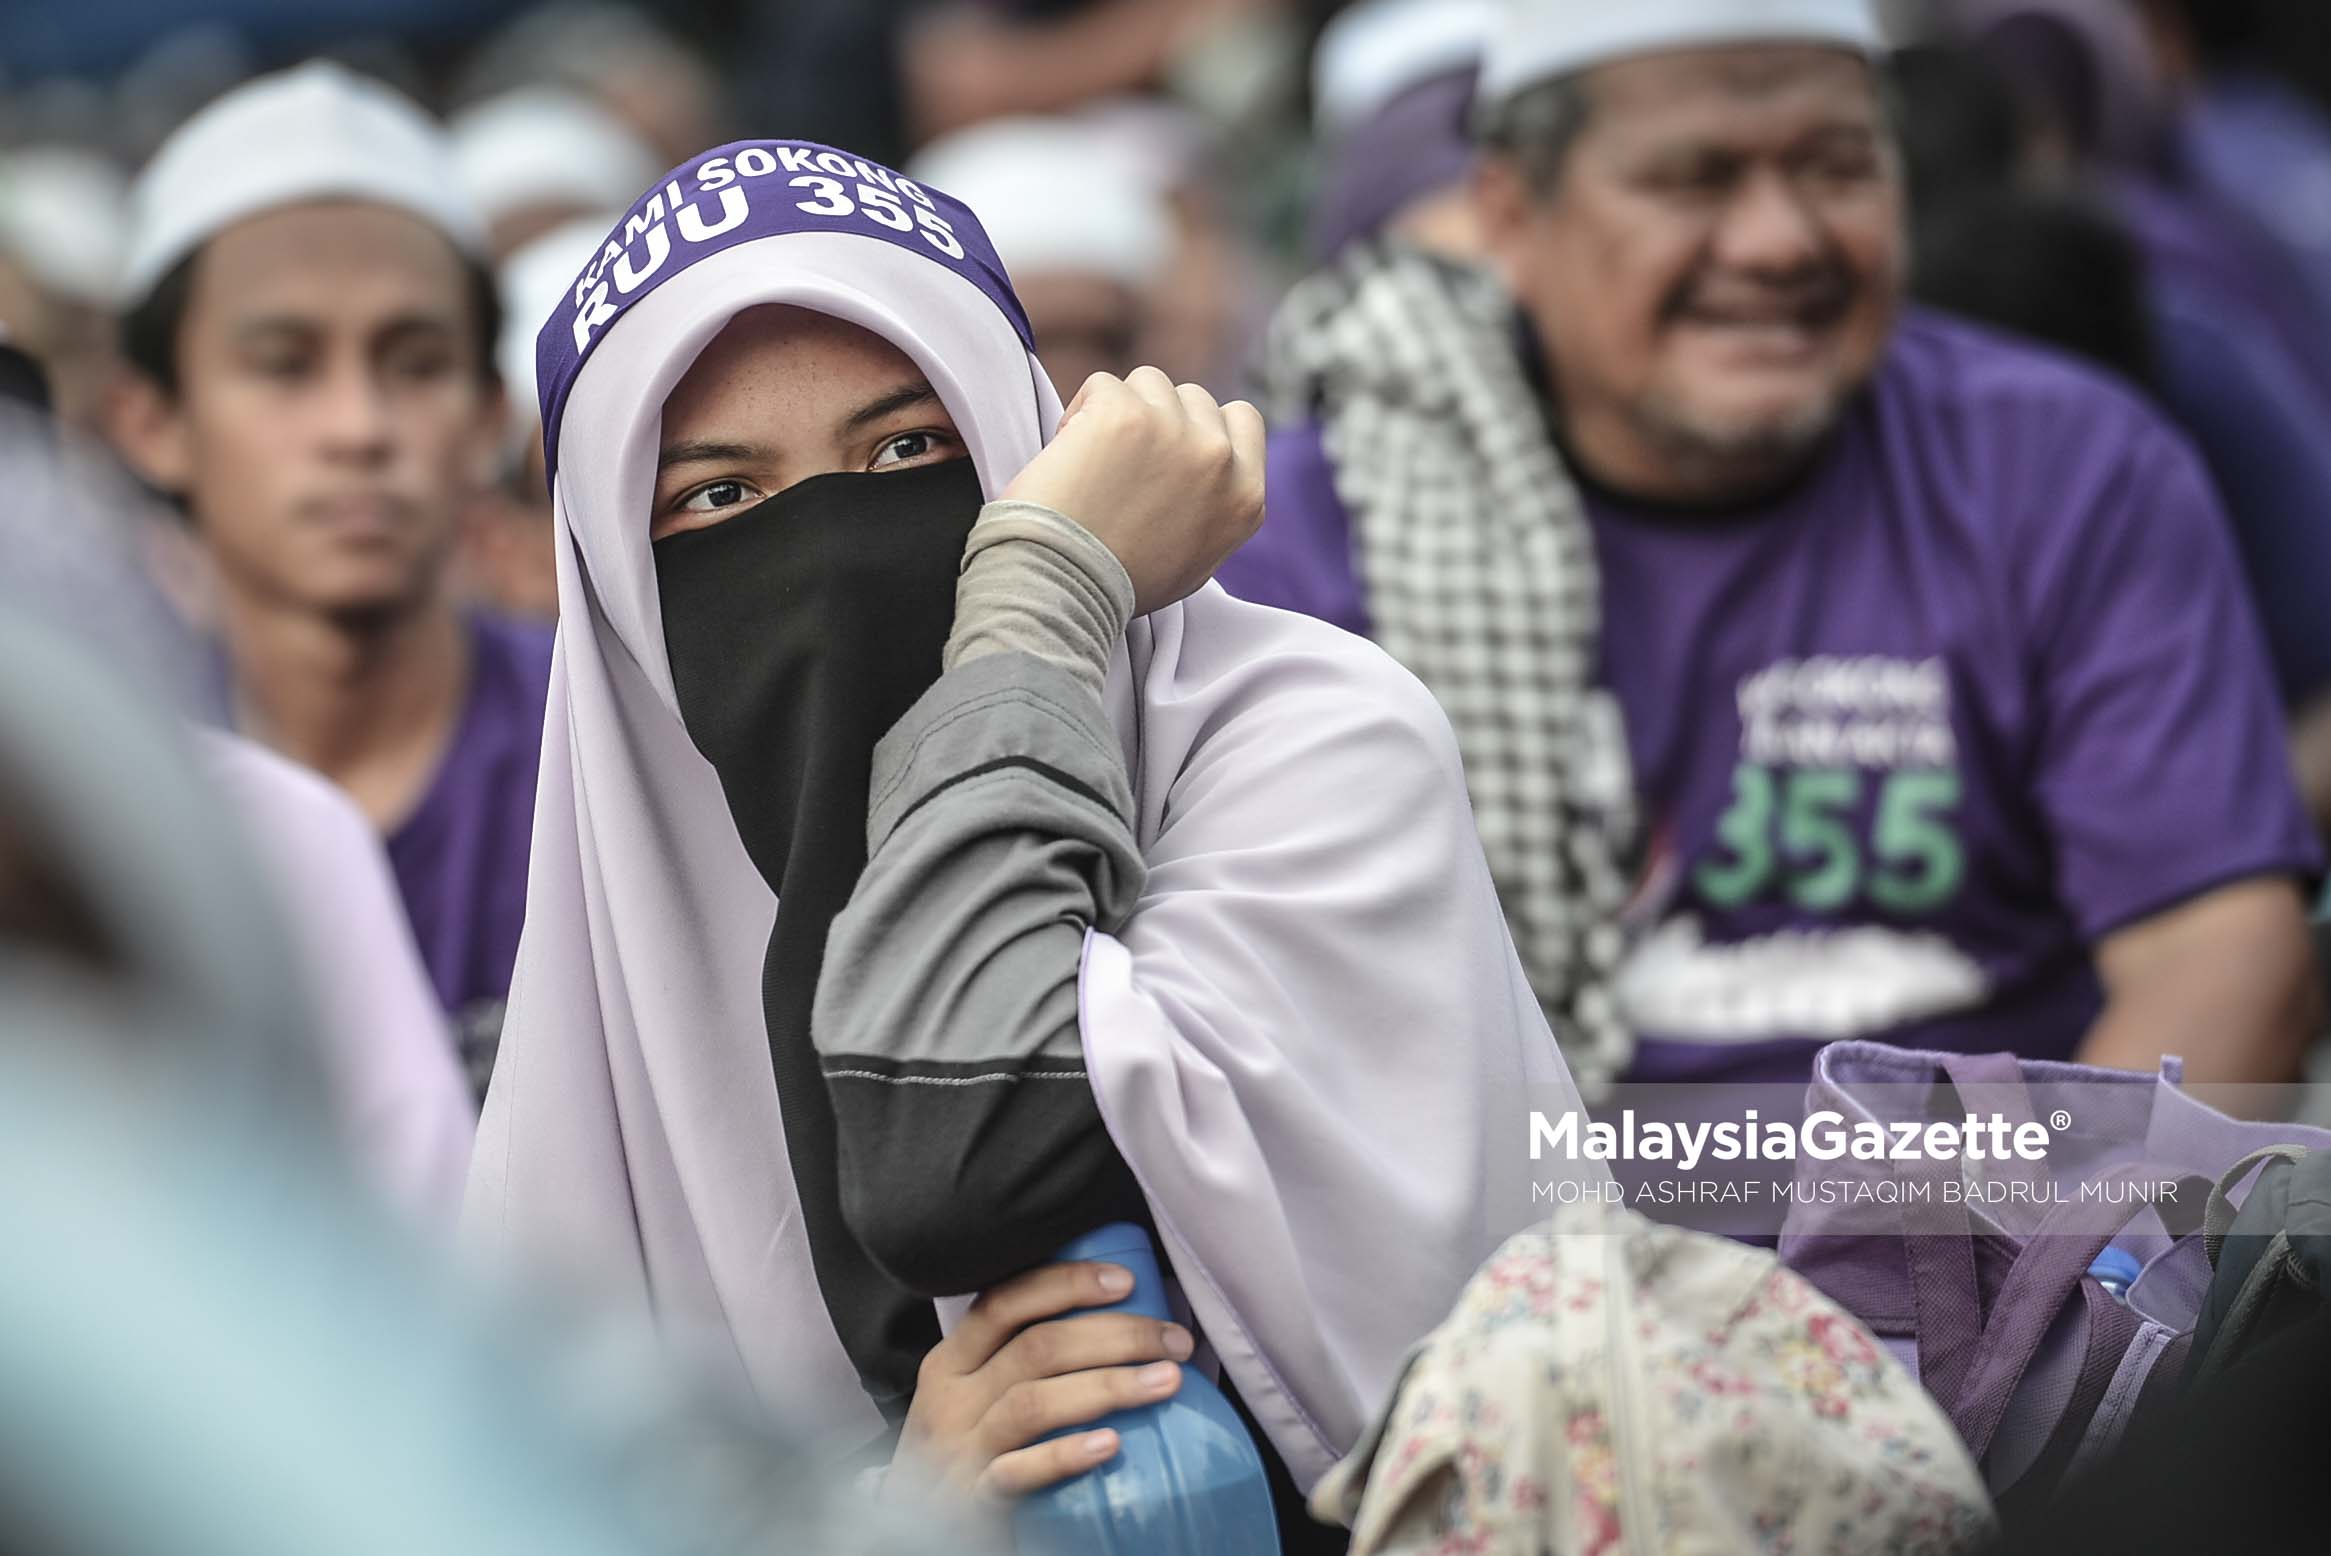 Reaksi seorang penyokong wanita pada Himpunan RUU 355 di Padang Merbok, Kuala Lumpur. foto ASHRAF MUSTAQIM BADRUL MUNIR, 18 FEBRUARI 2017.